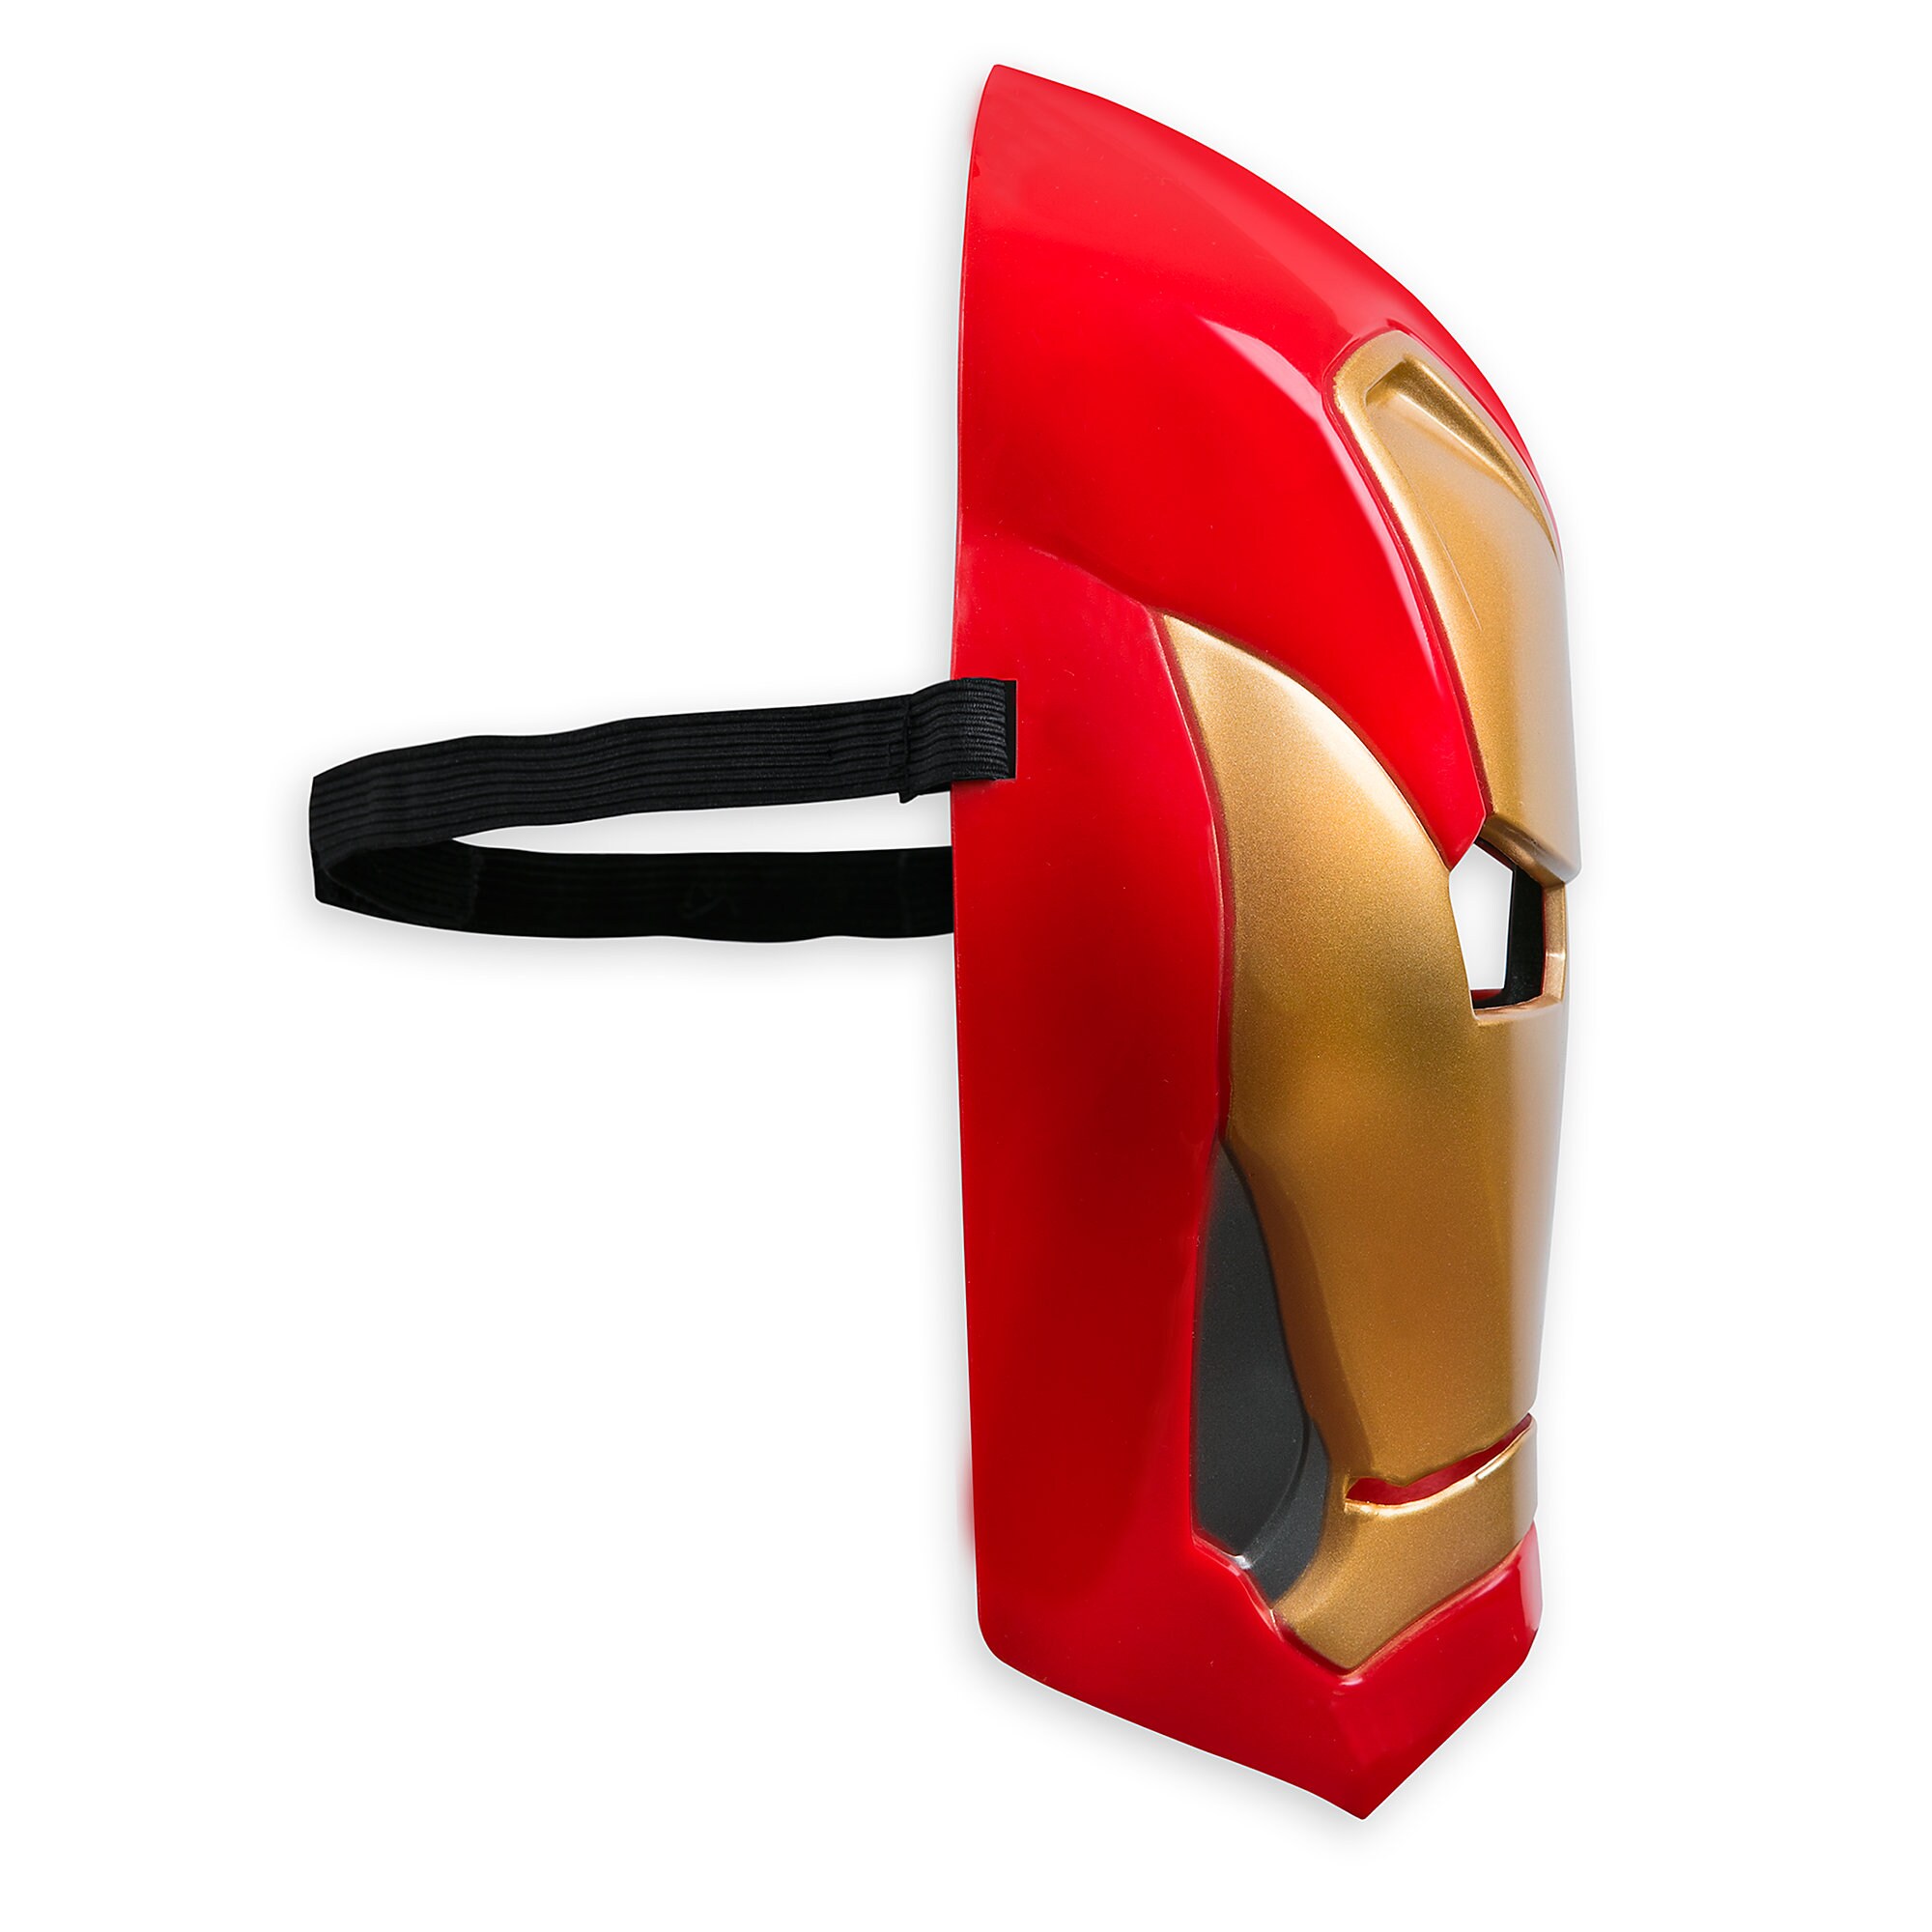 Iron Man Costume for Kids - Marvel's Avengers: Infinity War